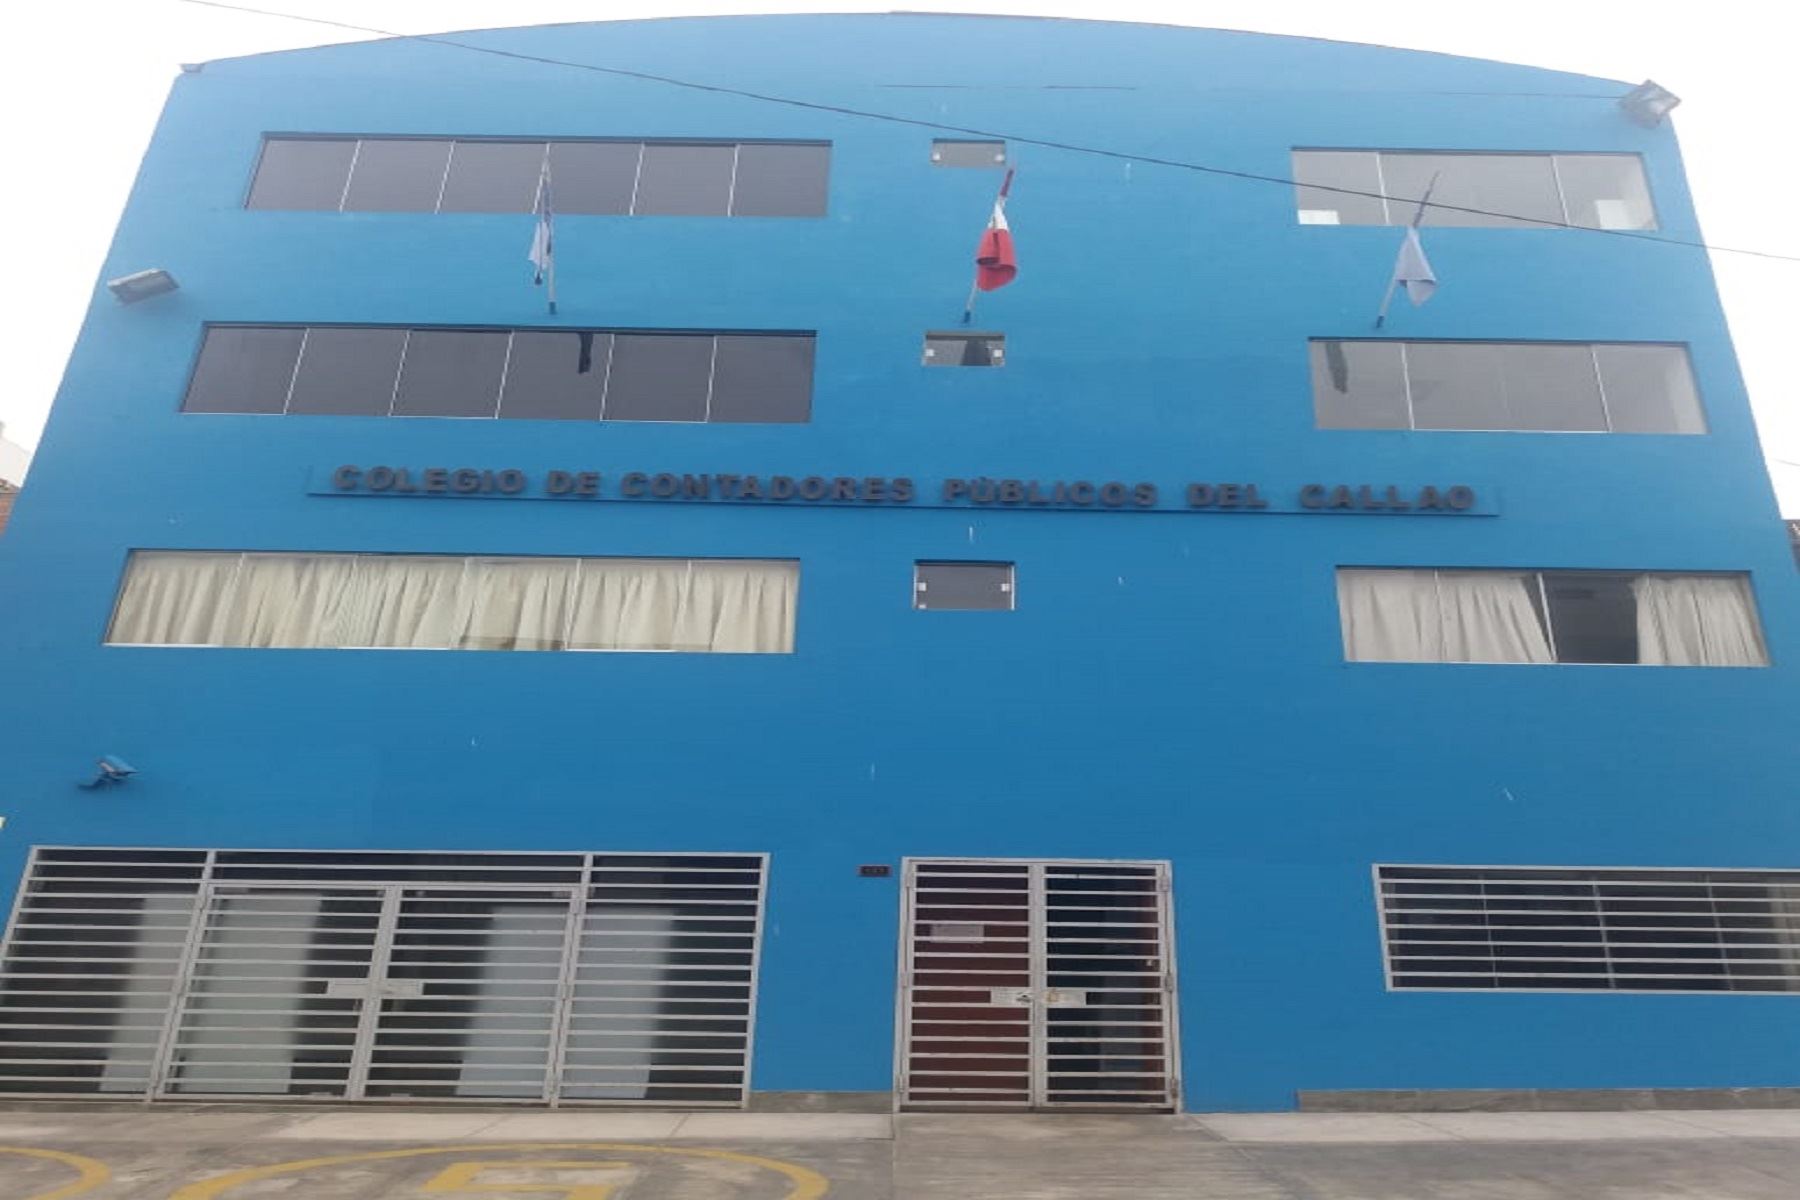 Colegio de Contadores Públicos del Callao